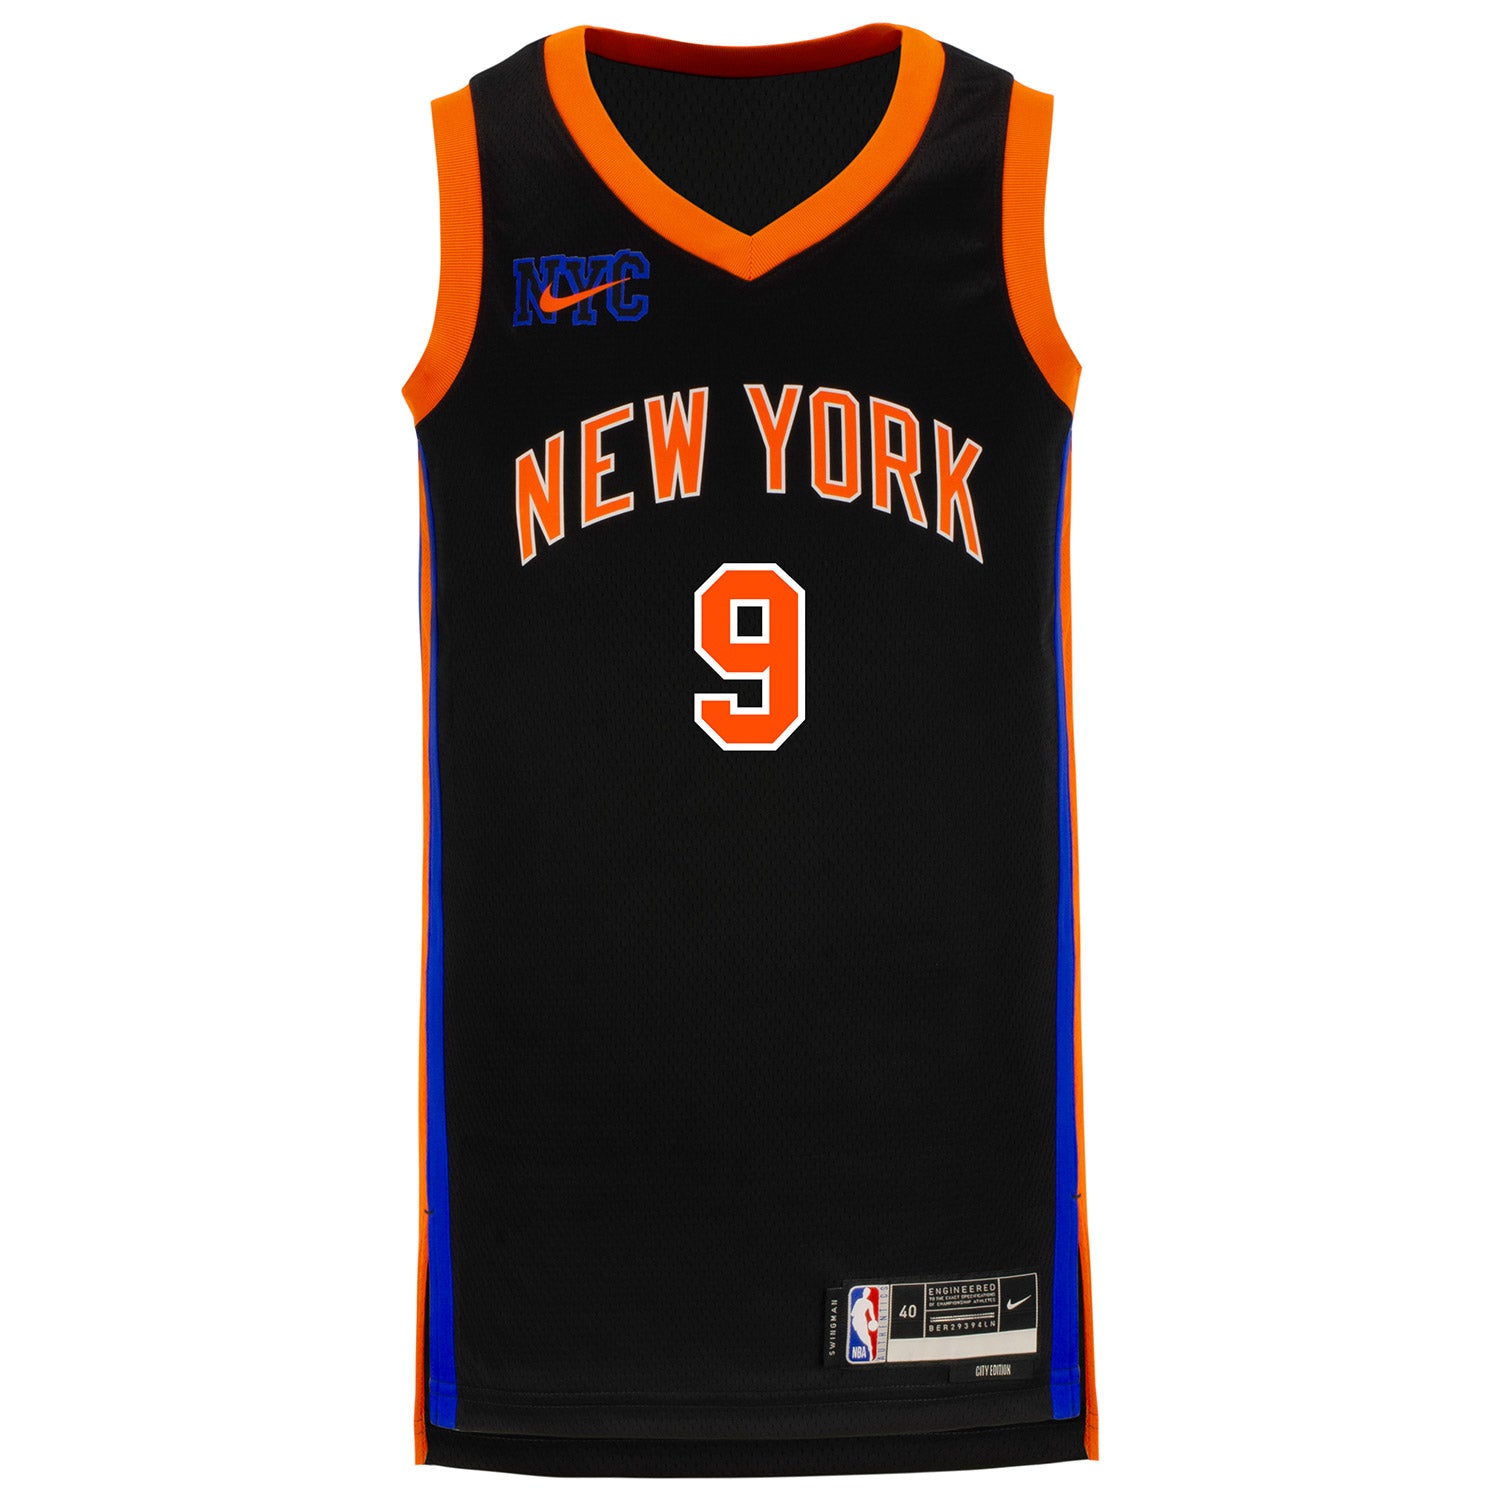 Whole New York Knicks Jerseys, Whole Knicks Jerseys, Knicks Whole